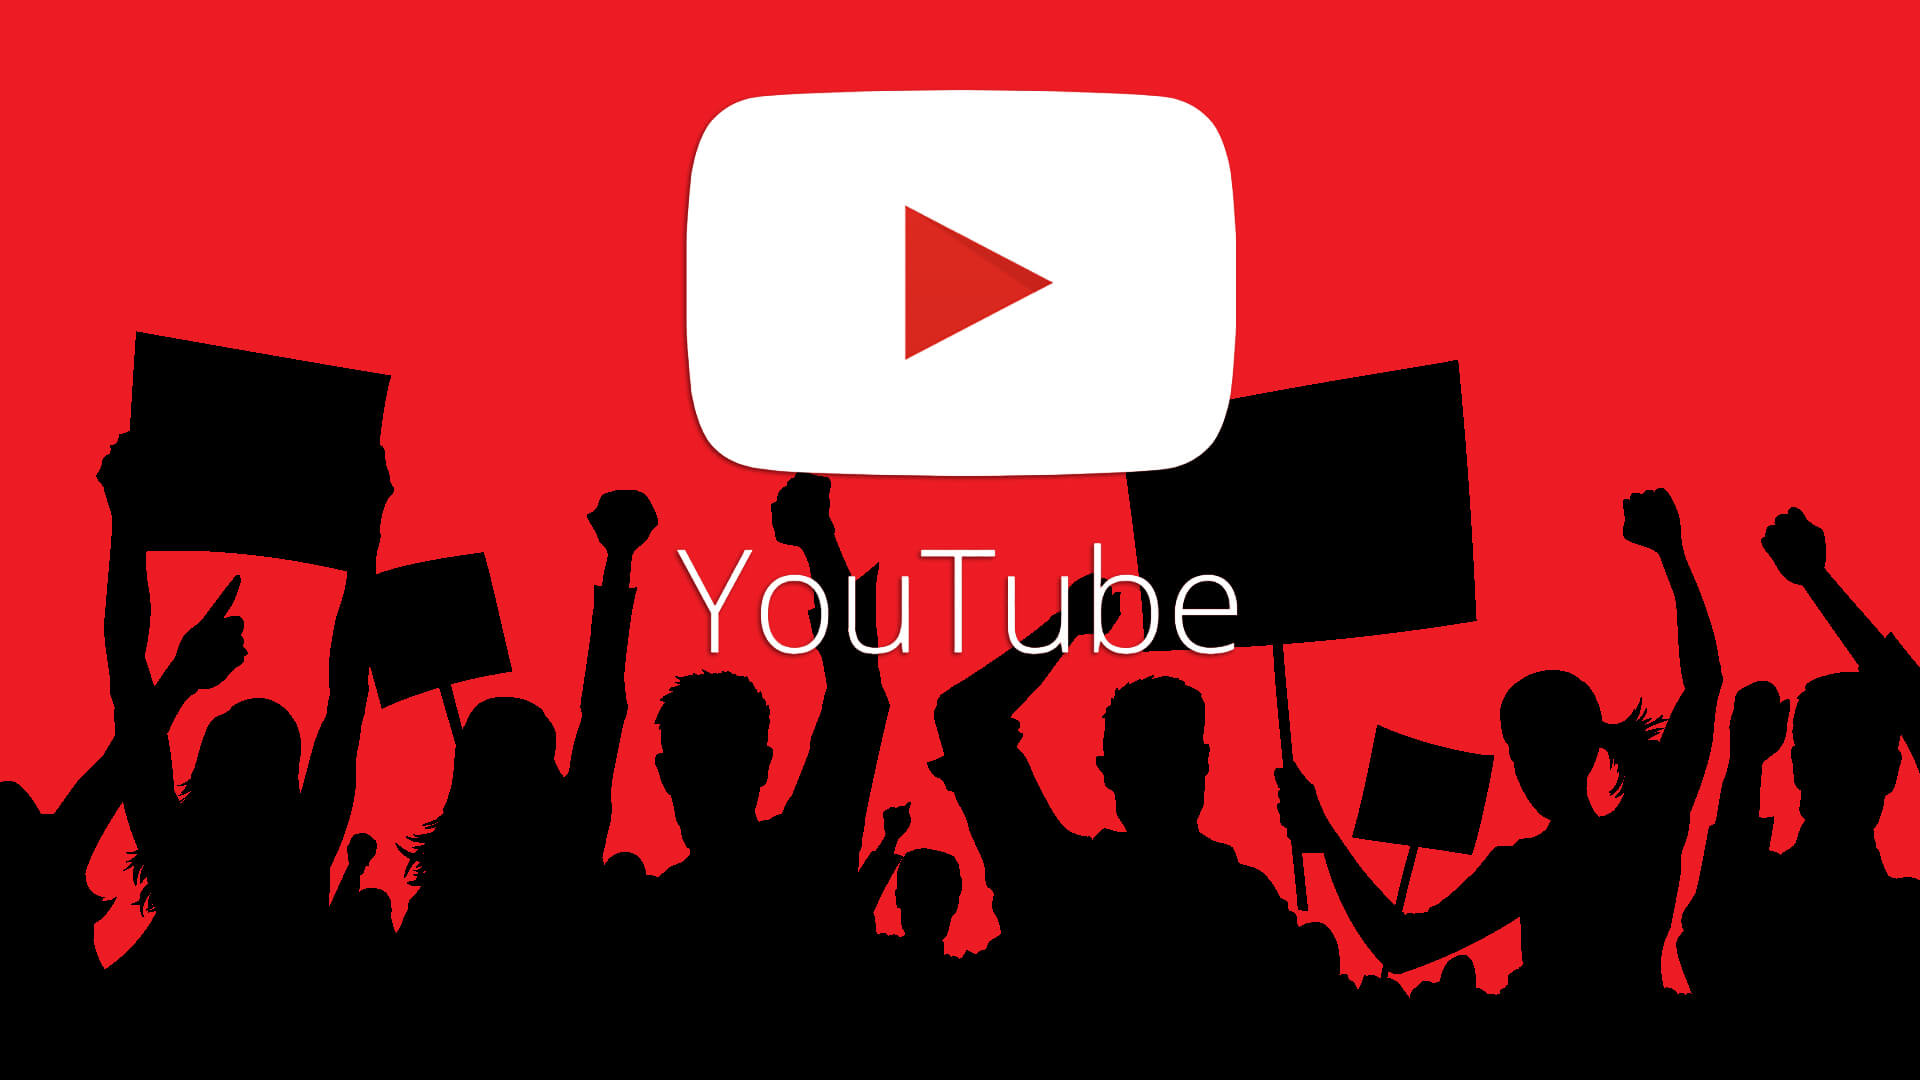 YouTube Corona virüsü konusunda geri adım attı! - Sosyopat